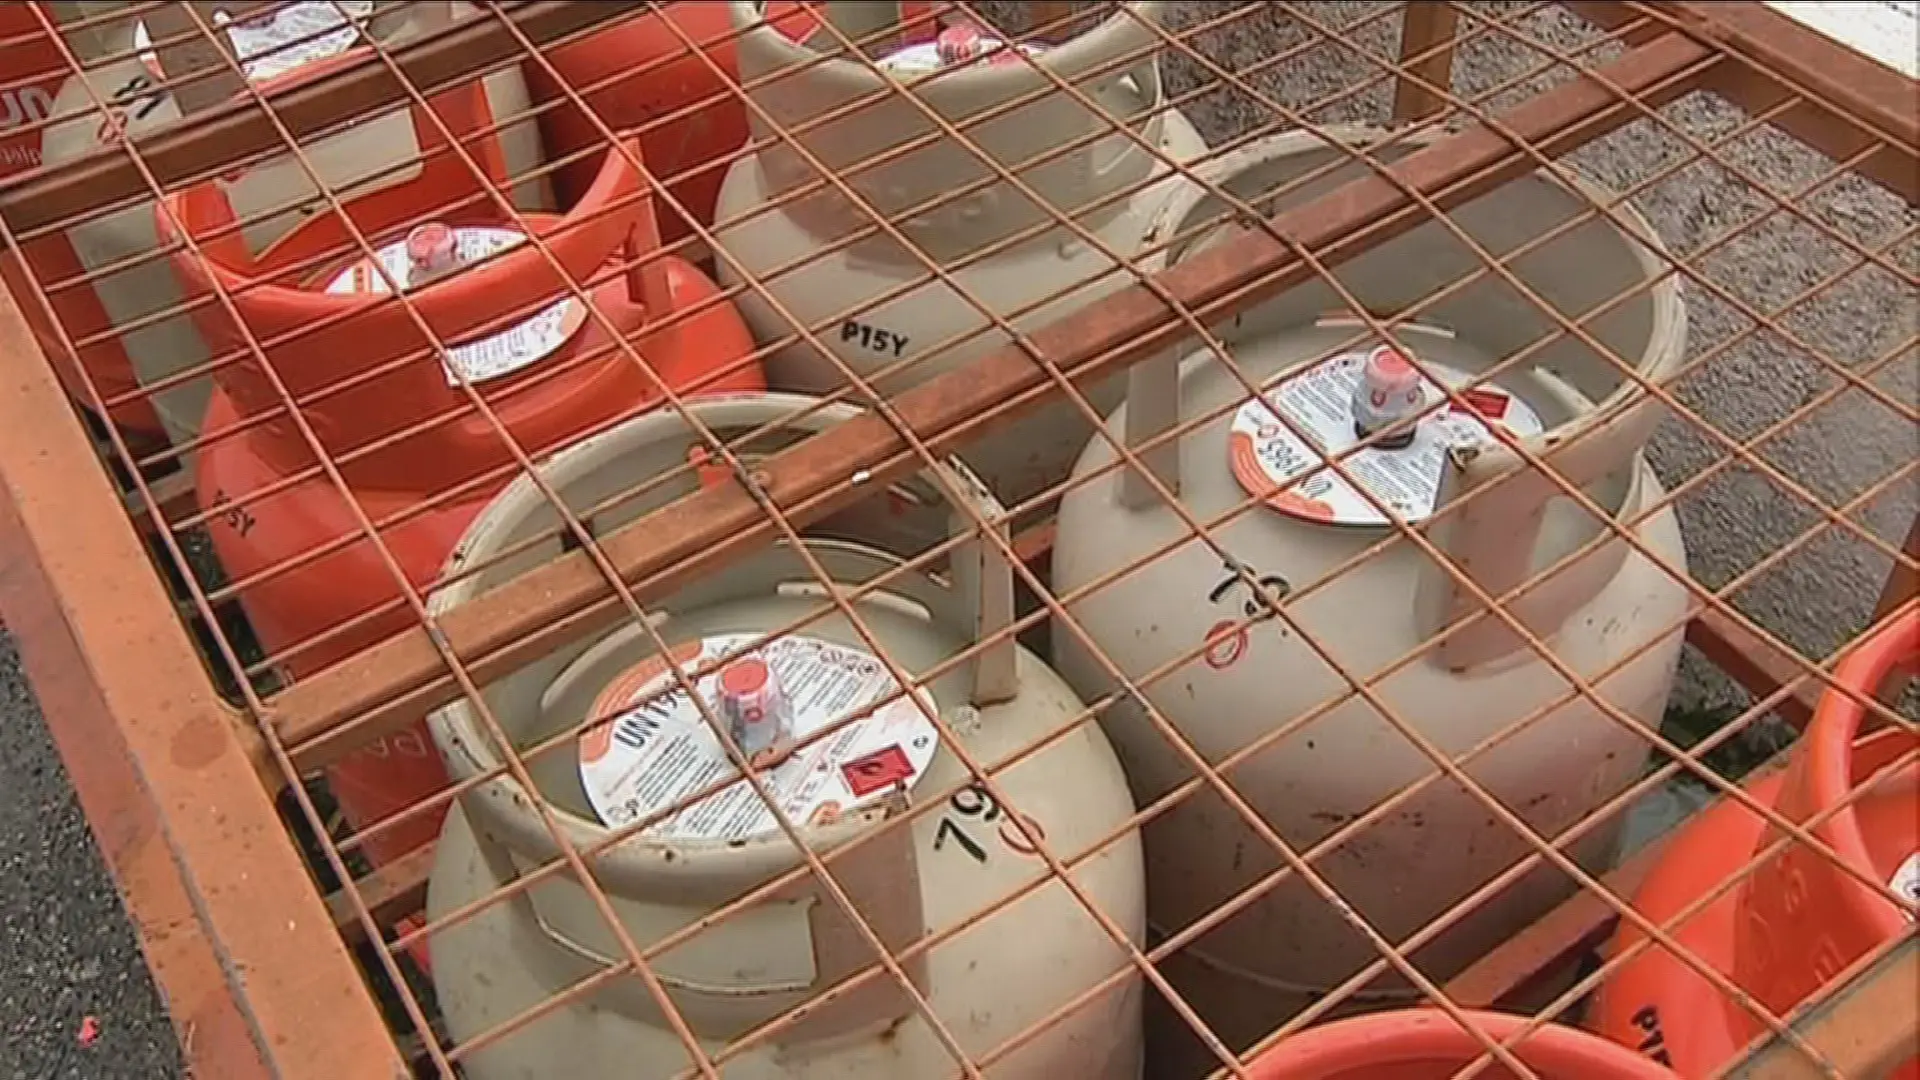 Vendedores de garrafas de gás corrigem preços após fiscalização